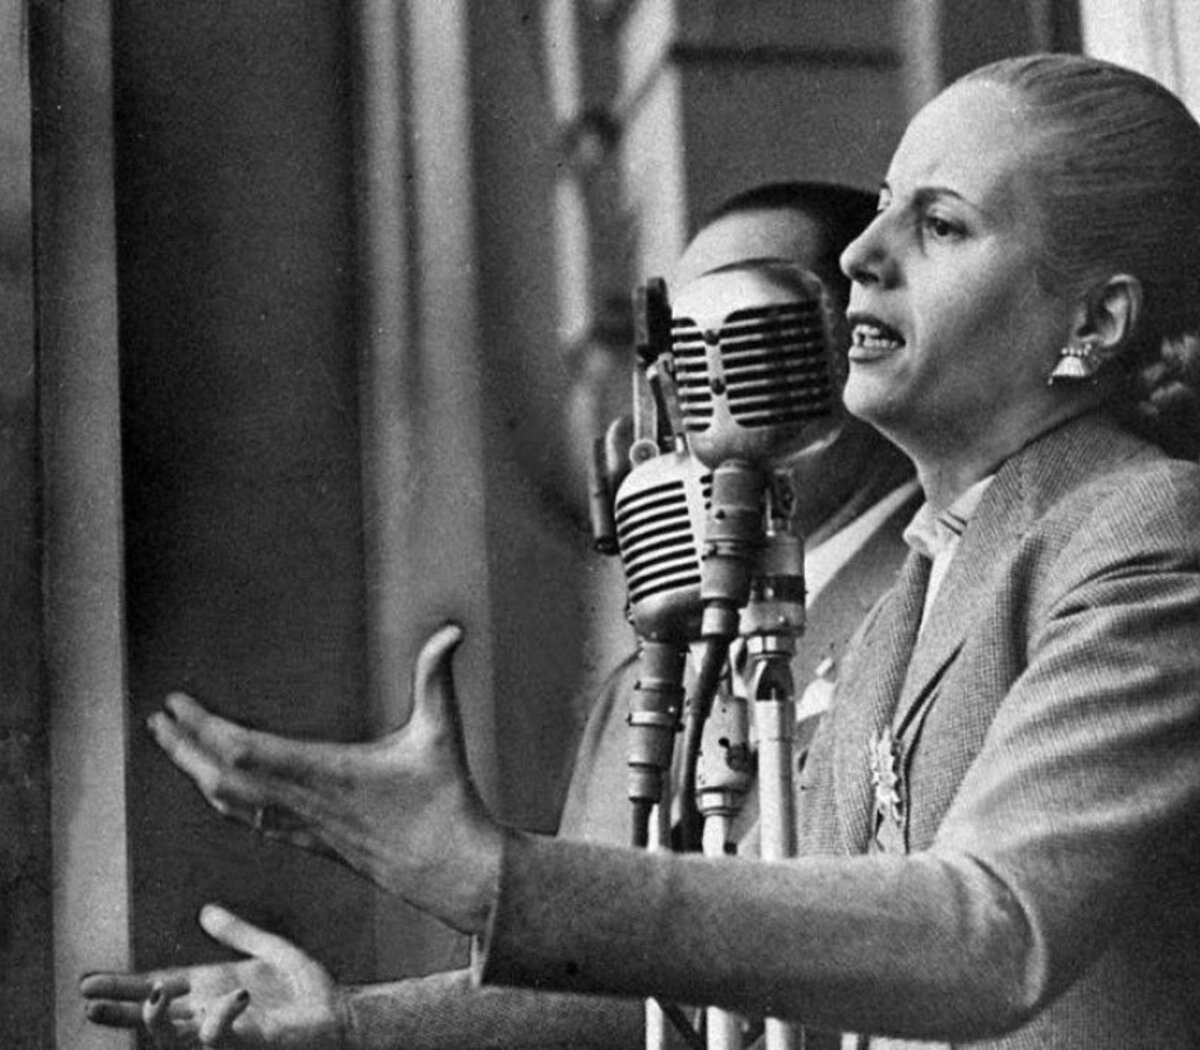 Diez frases para recordar a Eva Perón a 102 años de su nacimiento | Página12